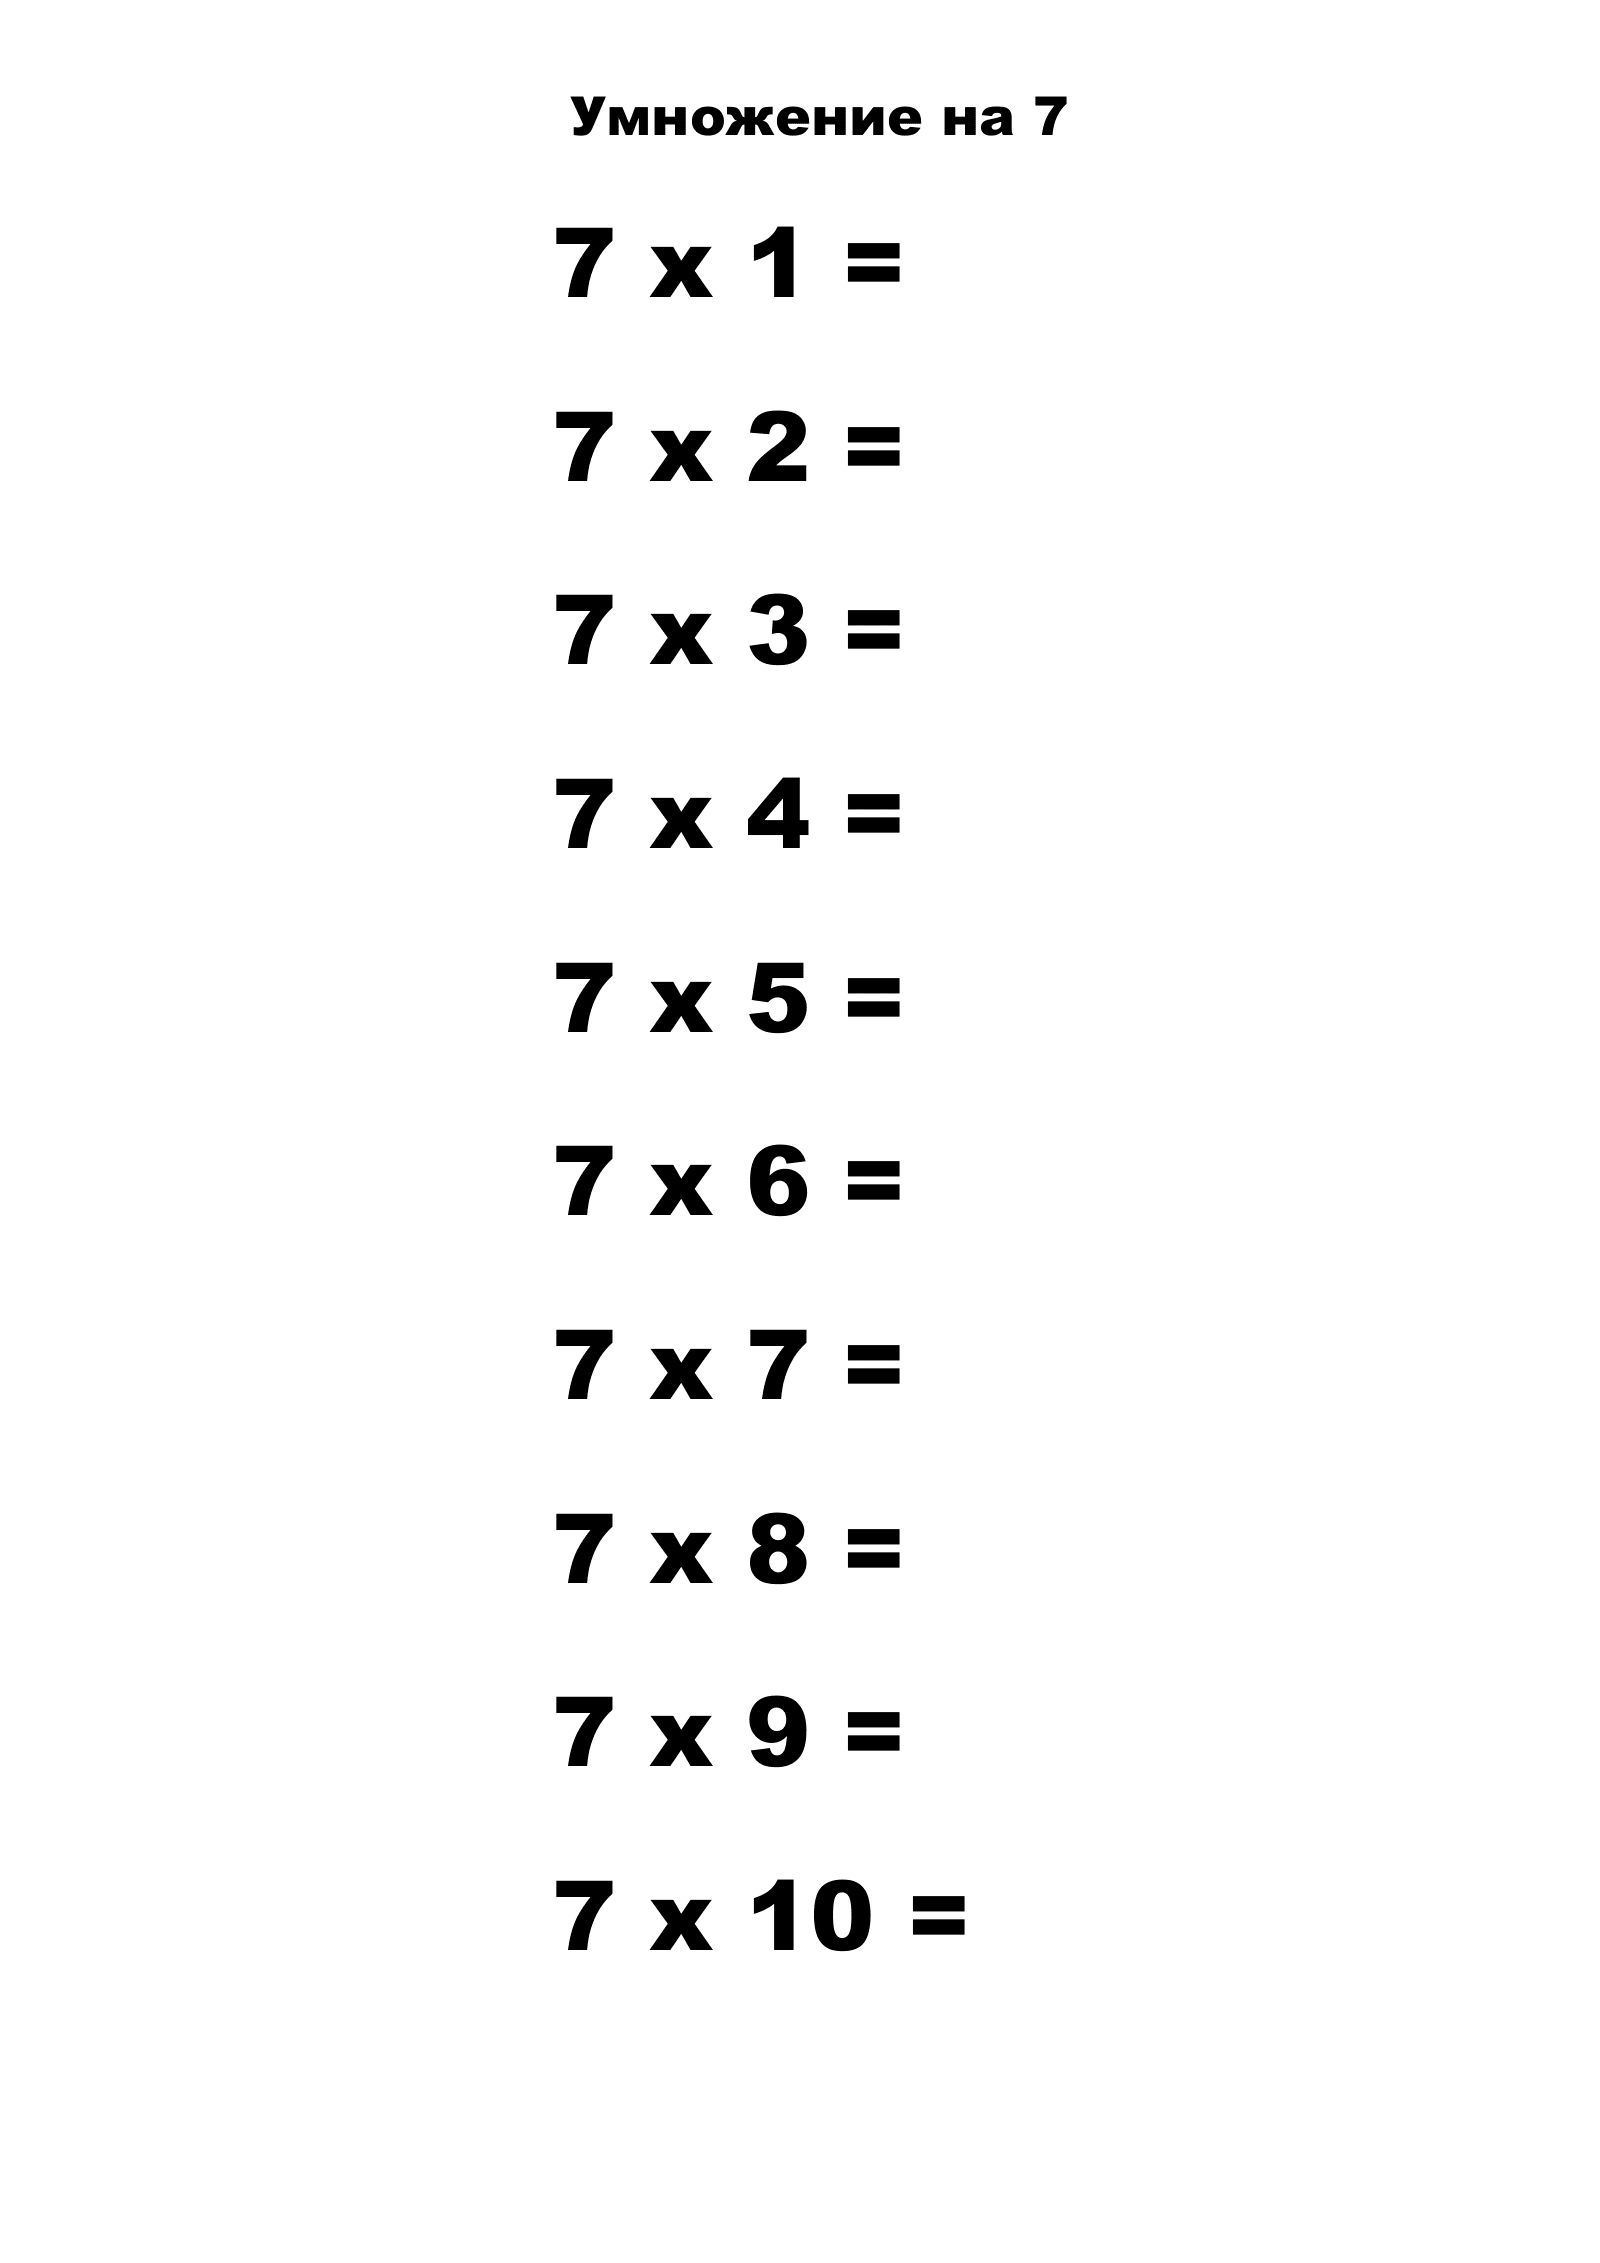 Таблица умножения на 7 без ответов. Распечатать